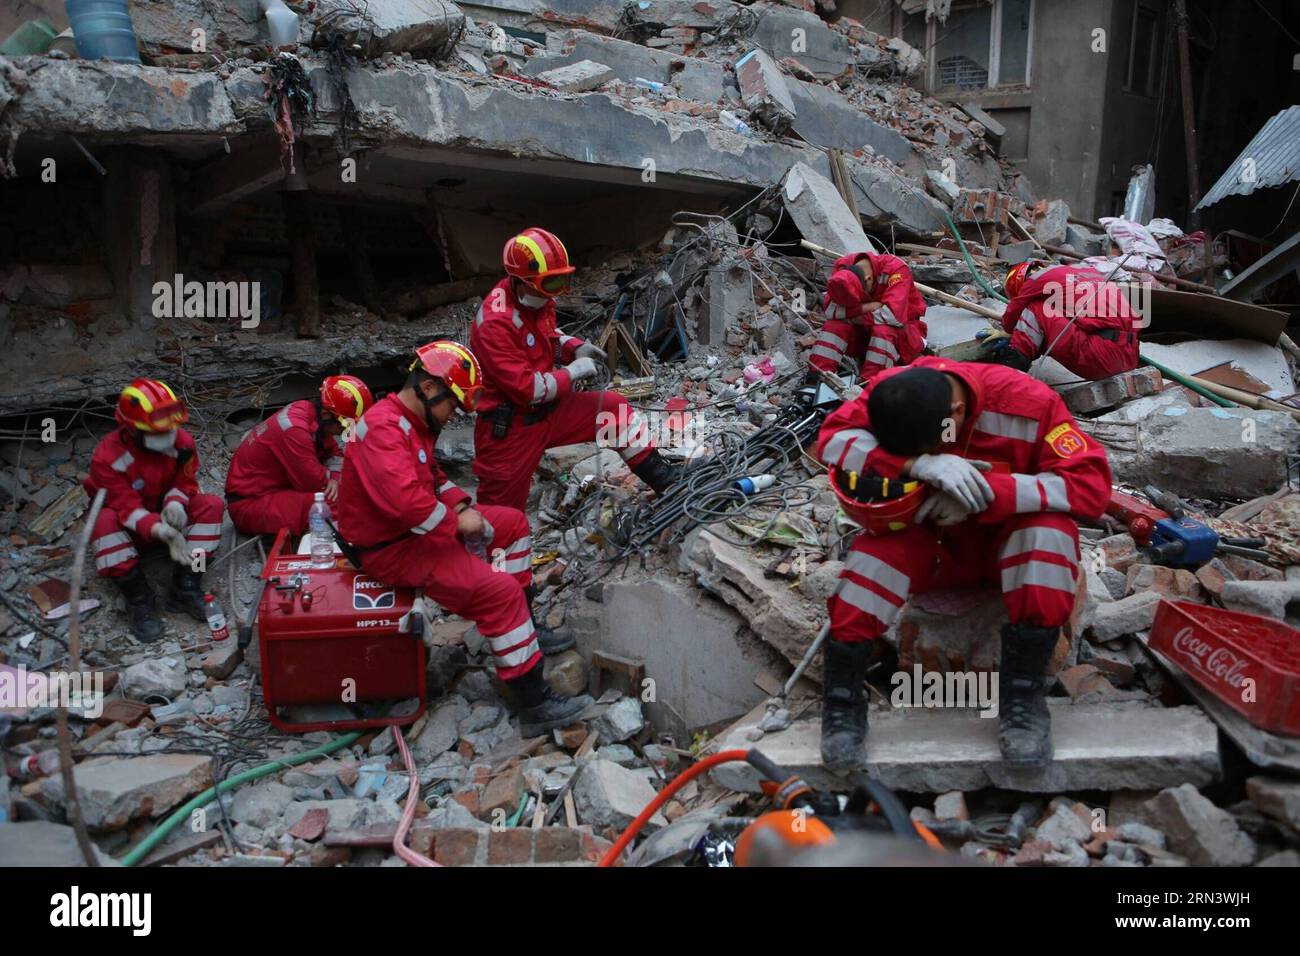 KATMANDU, 27 aprile 2015 -- i membri del China International Search and Rescue Team (CISAR) si riposano nel sito di salvataggio nella capitale del Nepal, Katmandu, il 27 aprile 2015. I membri di CISAR hanno trovato con successo il secondo sopravvissuto al terremoto dopo 34 ore di lavoro di salvataggio a Katmandu lunedì. ) NEPAL-KATMANDU-CINA-SQUADRA DI SOCCORSO-SOPRAVVISSUTA BaixYang PUBLICATIONxNOTxINxCHN Katmandu aprile 27 2015 i membri del team internazionale di ricerca e soccorso cinese CISAR si riposano PRESSO il sito di soccorso nella capitale del Nepal Katmandu IL 27 2015 aprile i membri di CISAR hanno trovato con successo il secondo Survivor terremoto dopo 34 ore di Resc Foto Stock